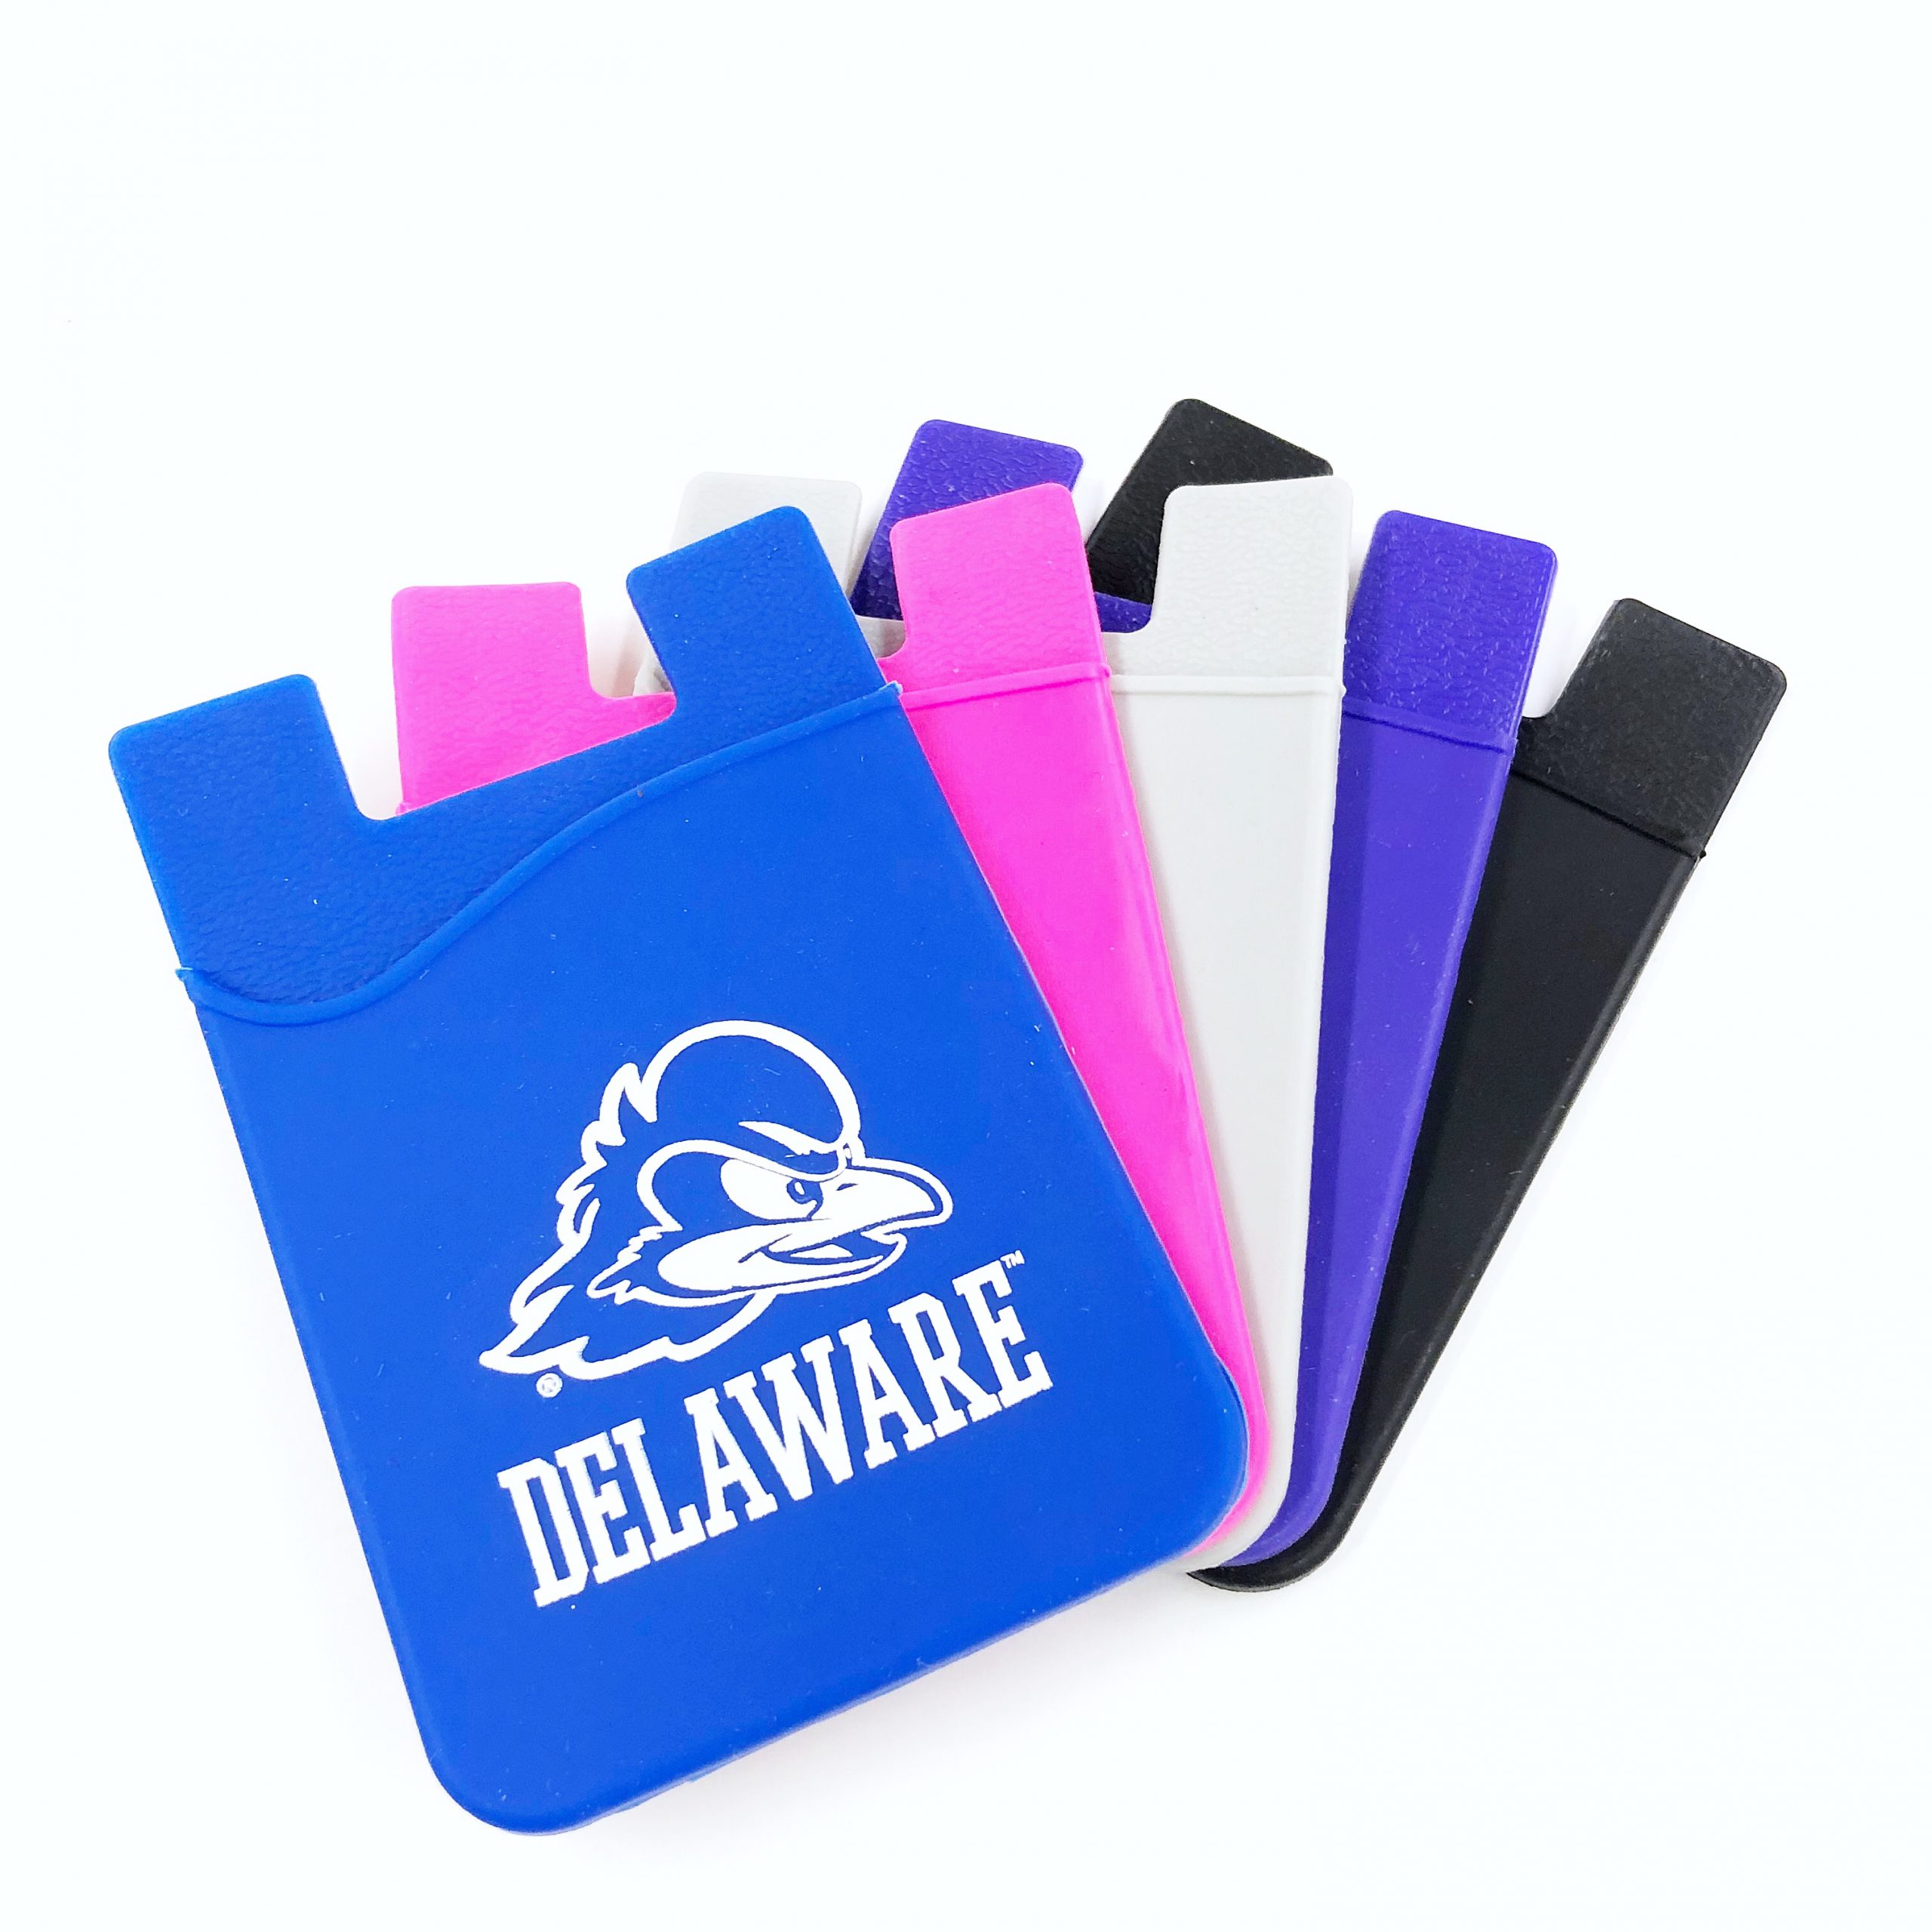 University of Delaware Cell Phone Pocket